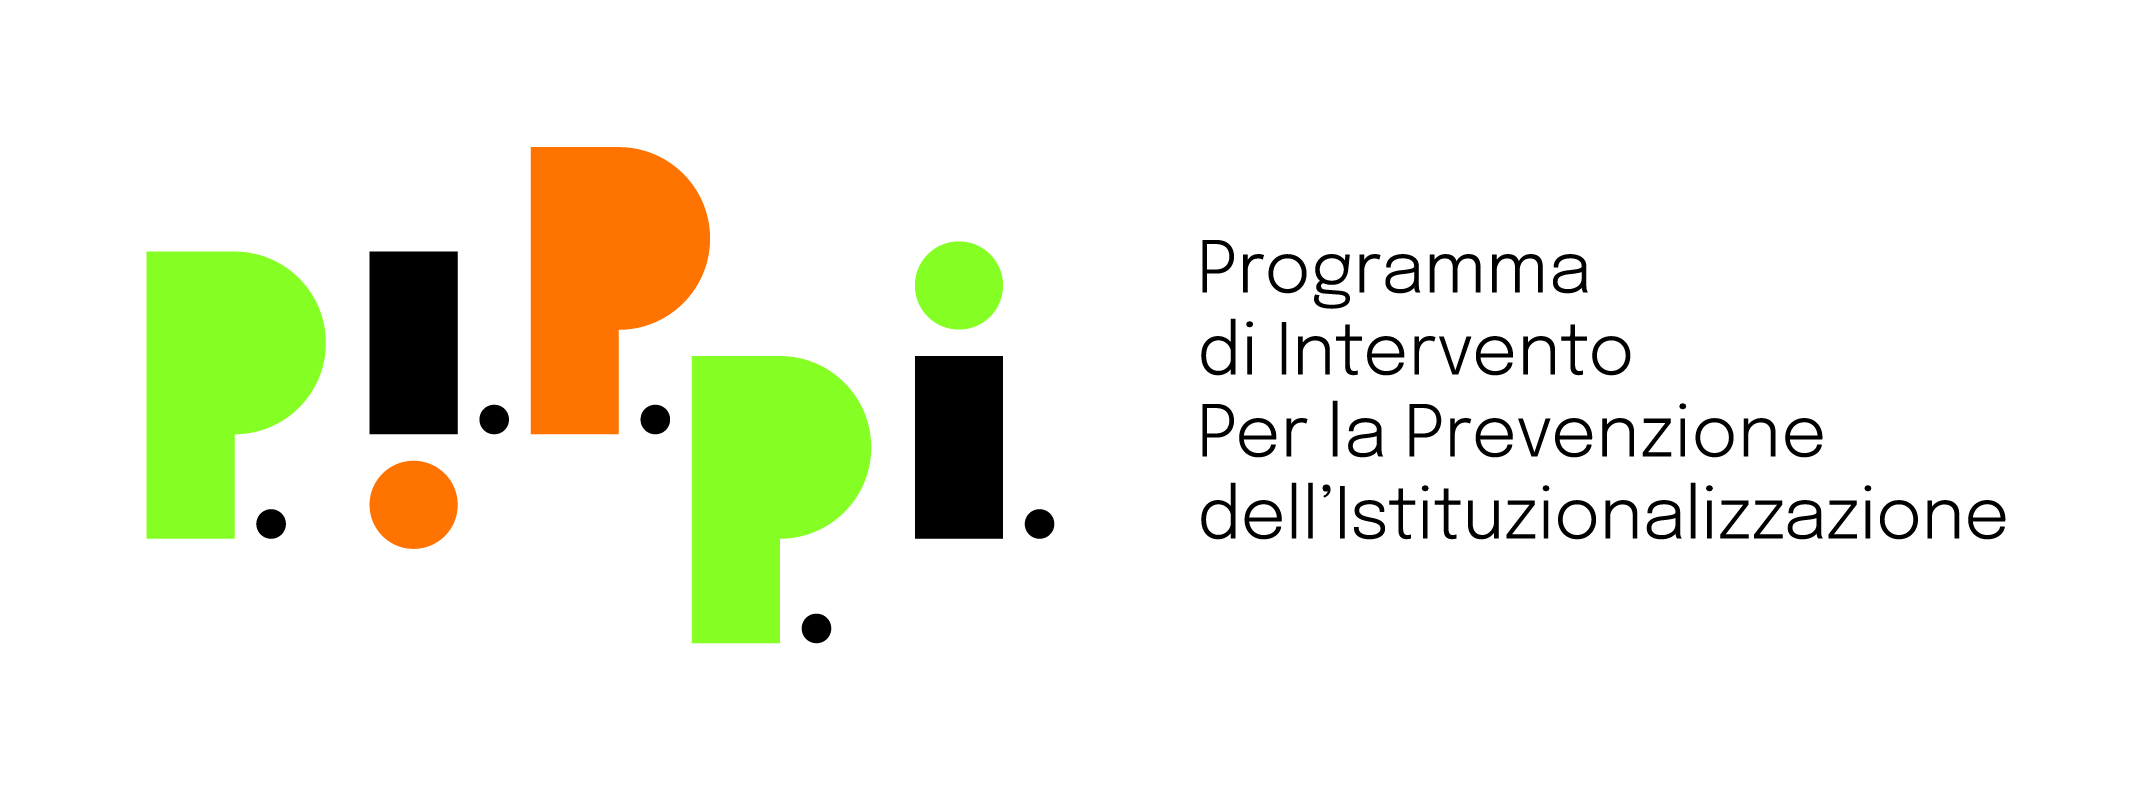 Avviso per procedura di co-progettazione con Enti del Terzo Settore – Realizzazione attività programma P.I.P.P.I. – Gruppi Genitori / Bambini – PNRR